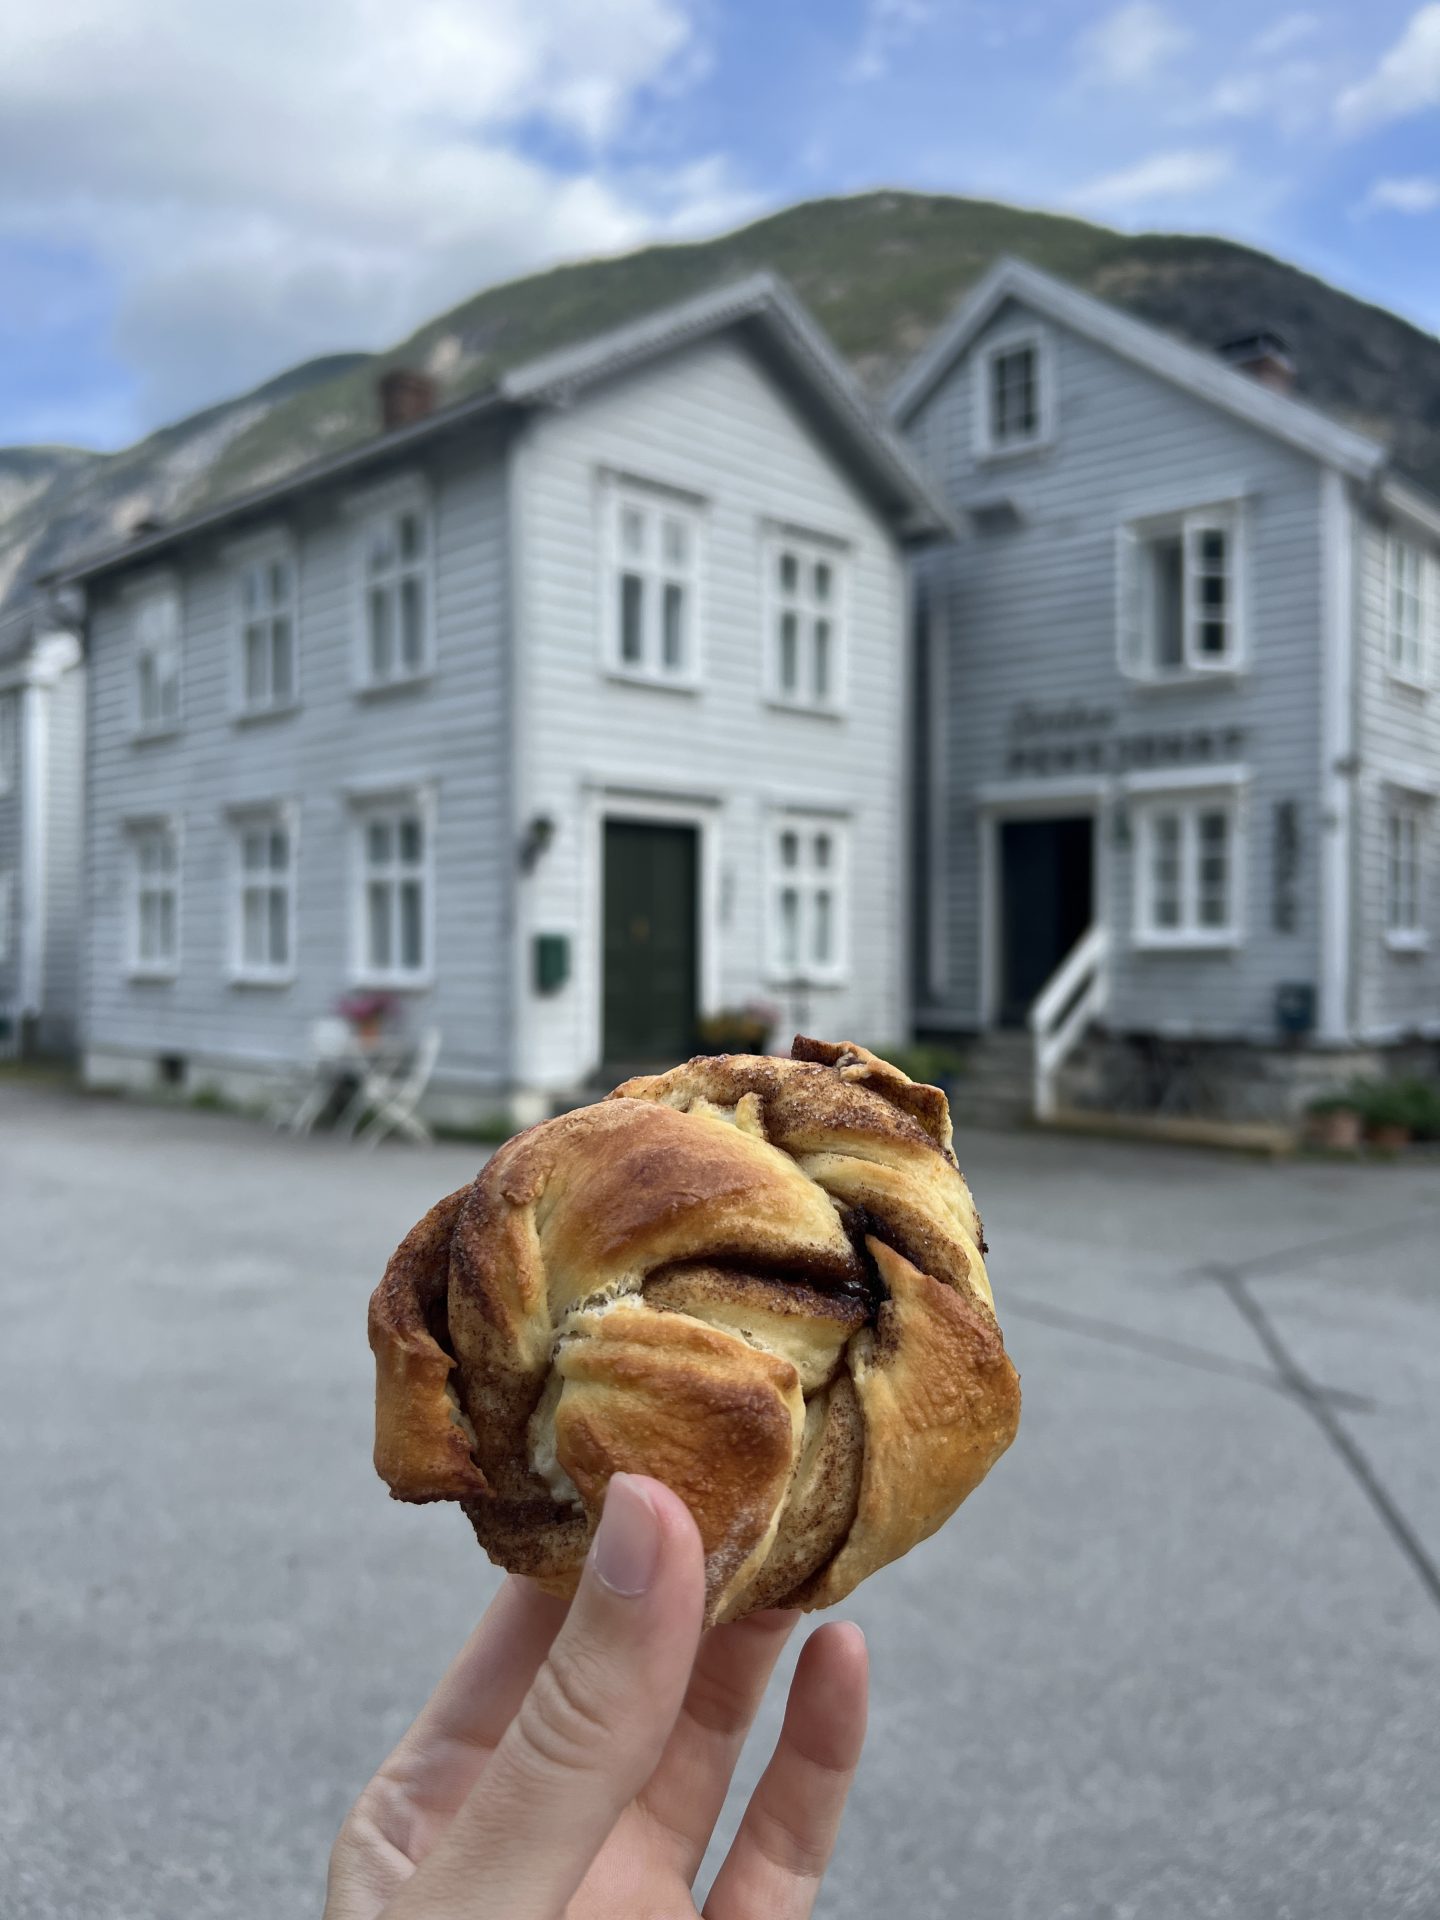 Pendant votre road-trip en Norvège, ne manquez pas de goûter des roulés à la cannelle 